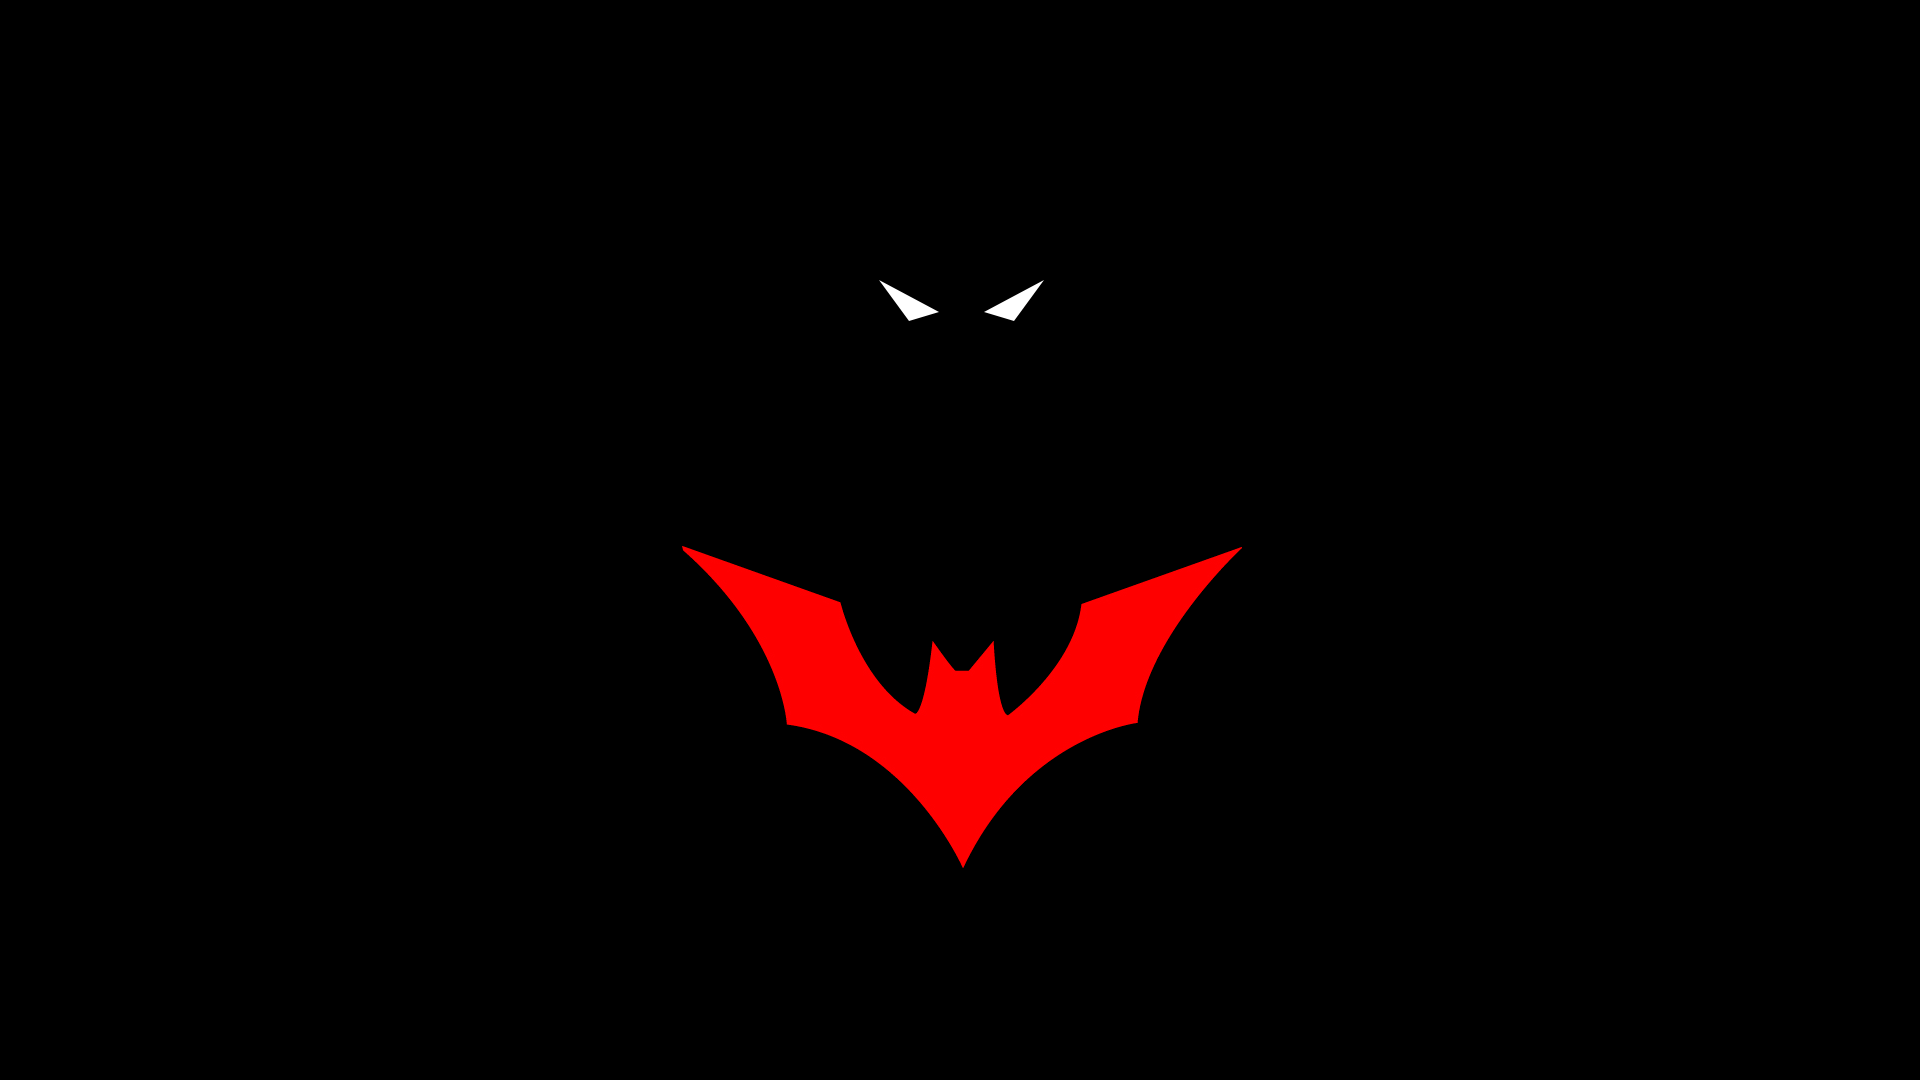 Superman vs Batman Beyond Logo - Batman Logo wallpaper For Free Download (HD 1080p)